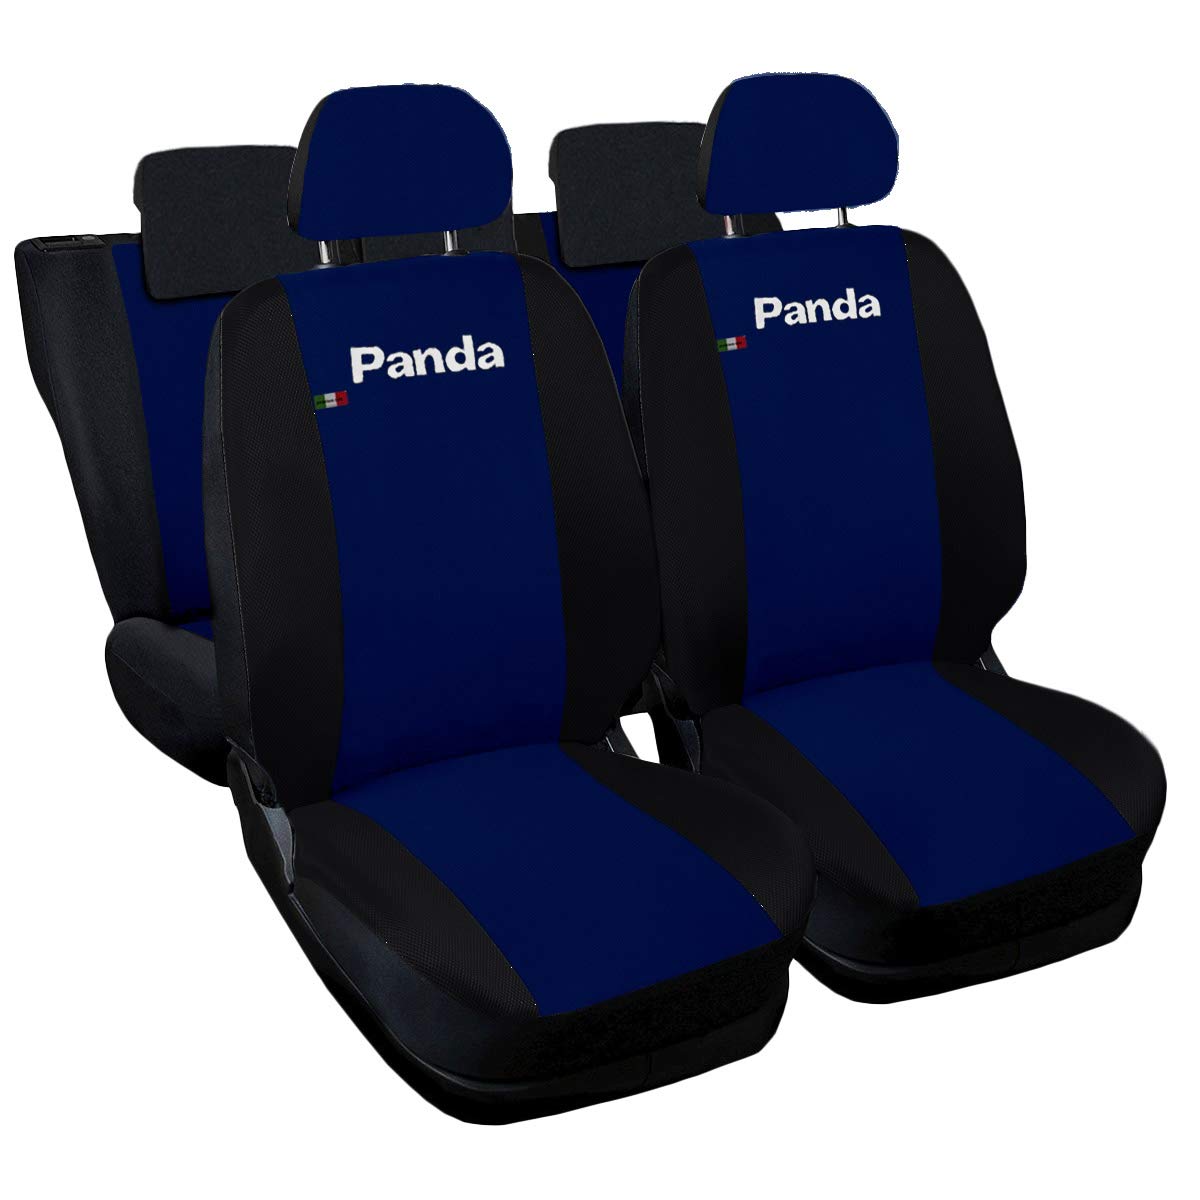 Auto Accessori Lupex - Kompatible Autositzbezüge für Panda zweite 169 und dritte 319 Reihe, dunkelblau schwarz, Made In Italy, sitzbezüge vorne und hinten, einteilig, Polyester von Auto Accessori Lupex